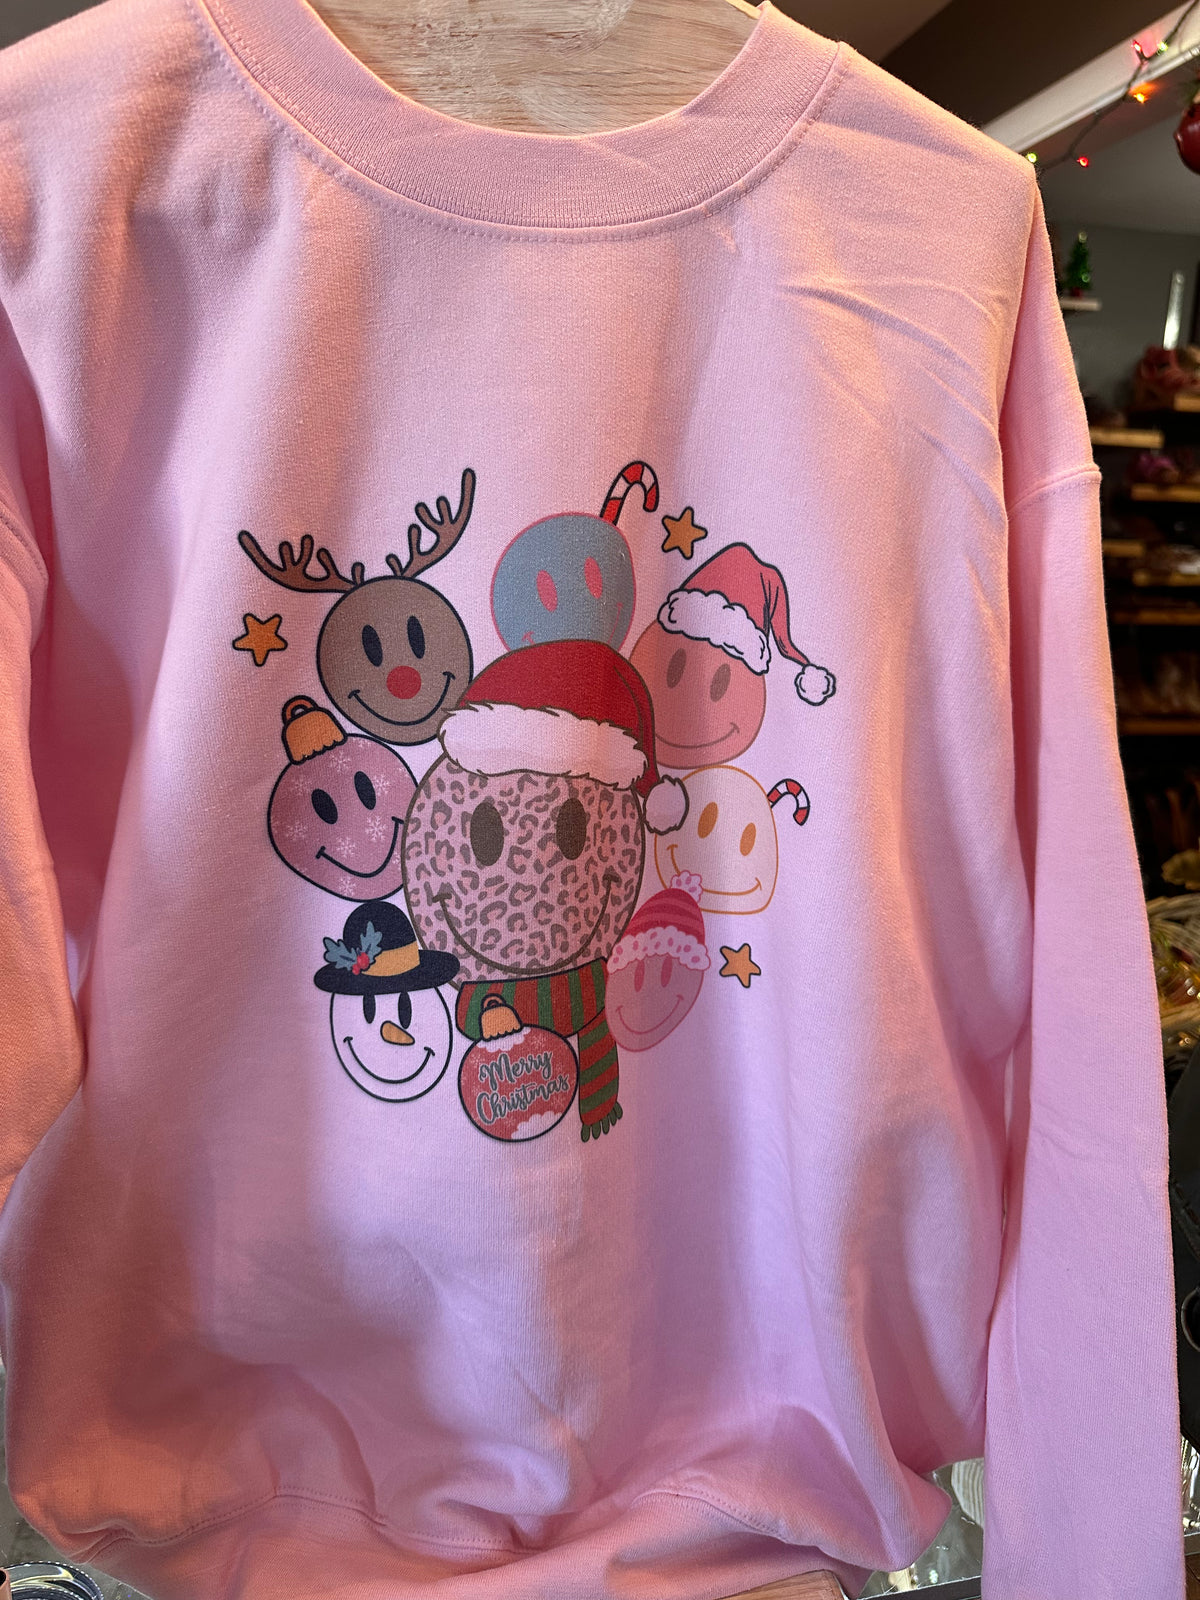 Merry Christmas Smiley Crewneck Sweatshirt